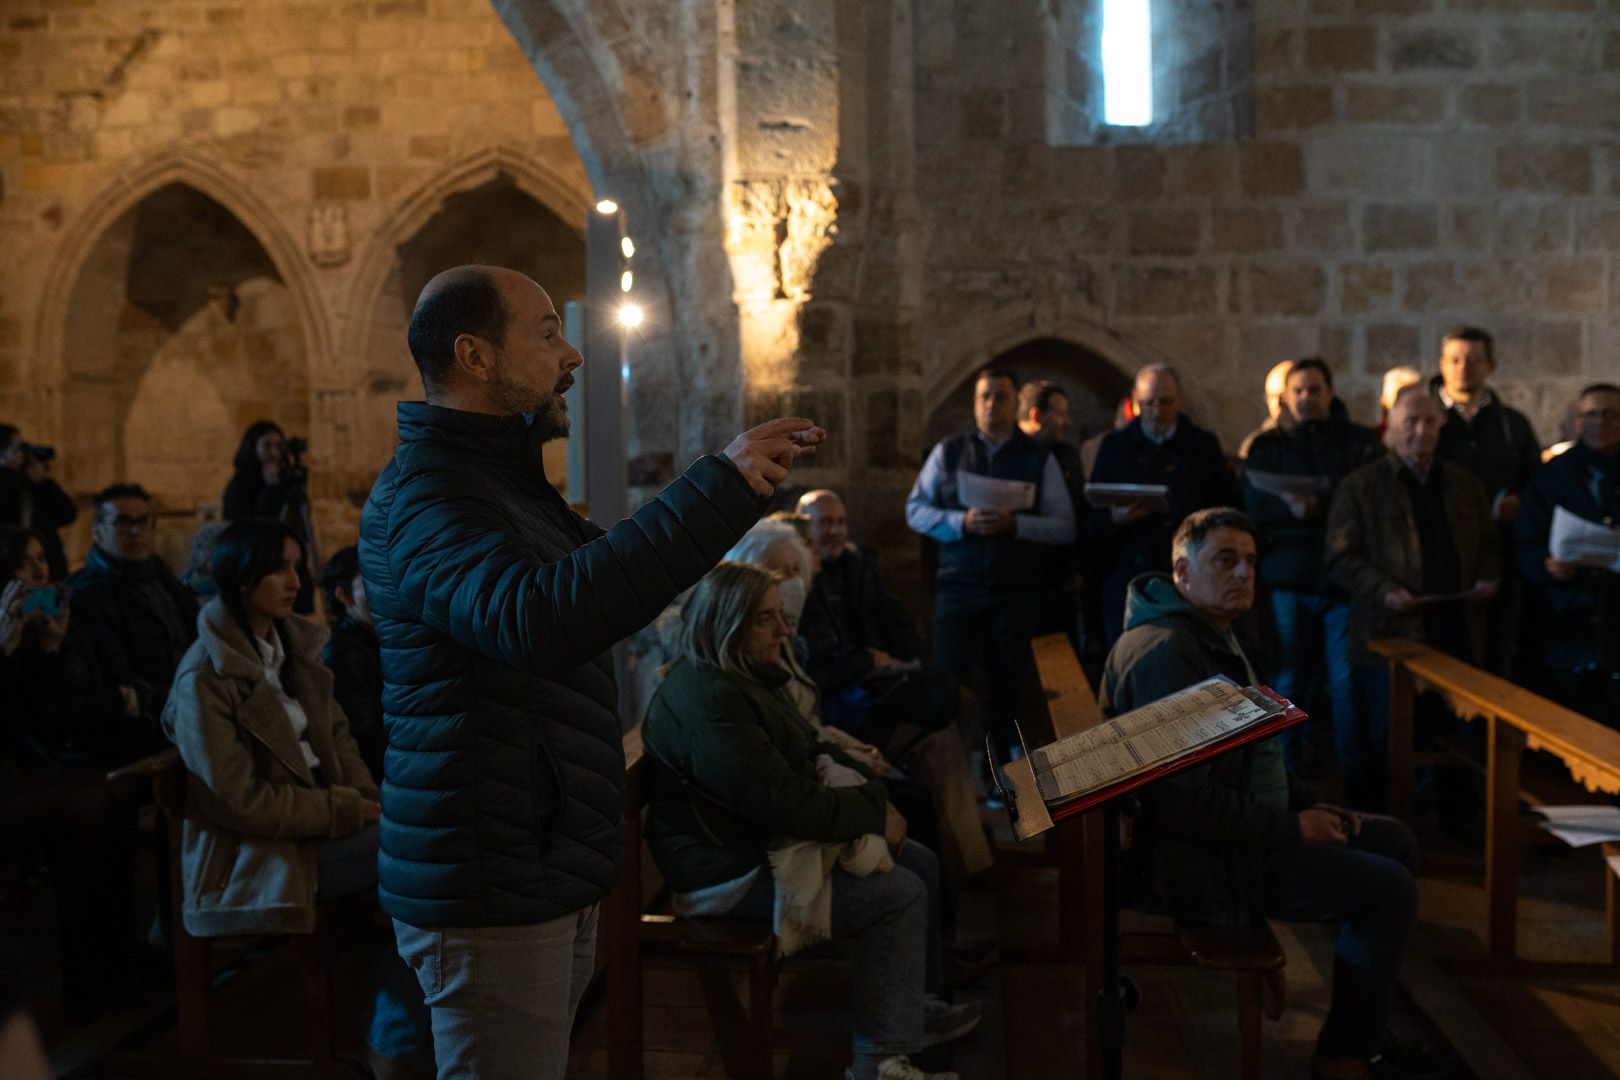 Ensayo del 'Miserere' a cargo del coro del Yacente en Zamora